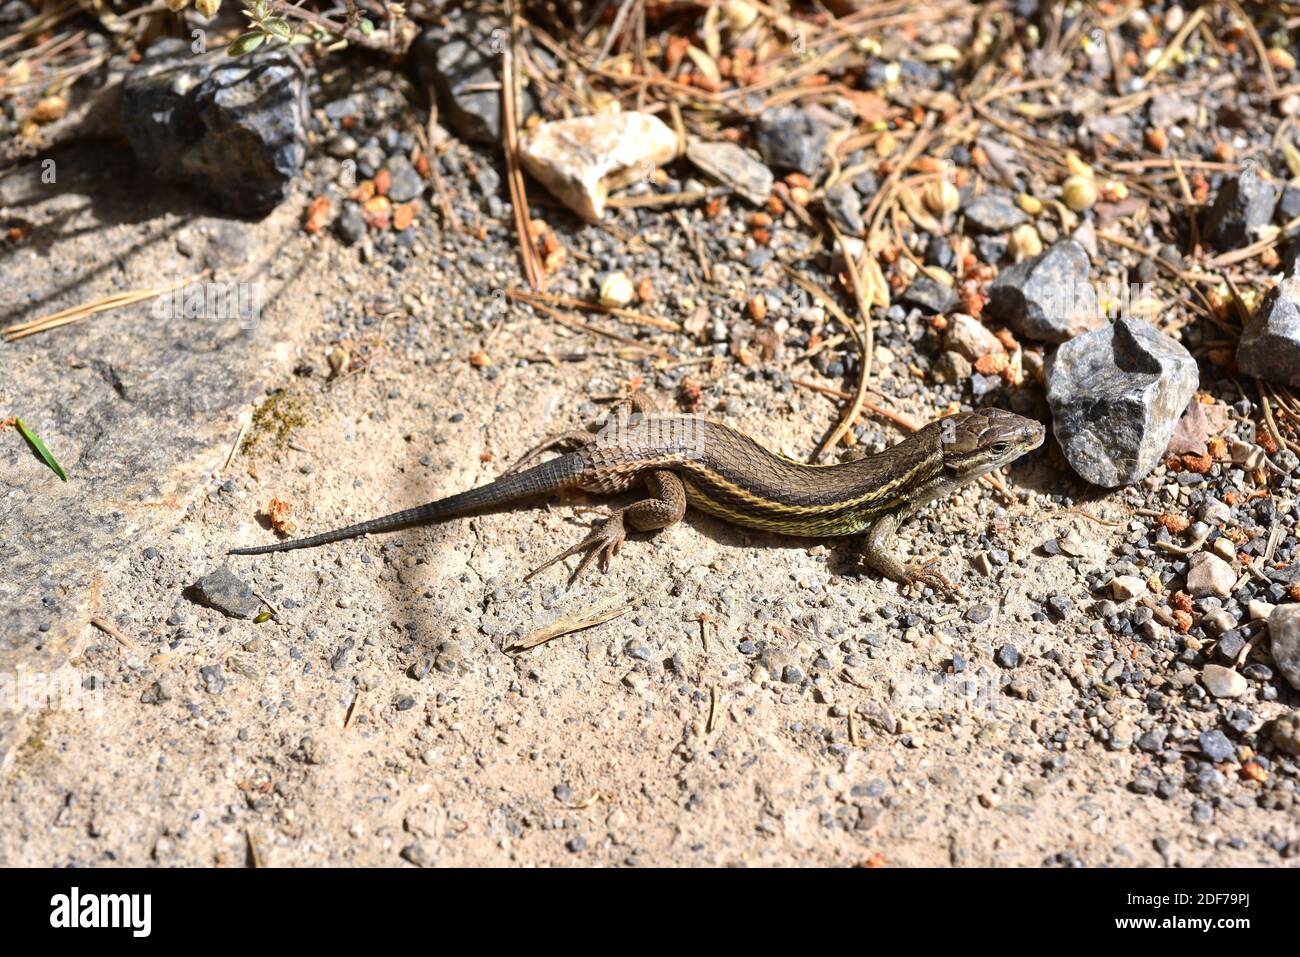 El corredor de arena argelino (Psammodromus algirus) es un lagarto nativo de la Península Ibérica y del oeste de África. Esta foto fue tomada en Sierra Nevada Foto de stock